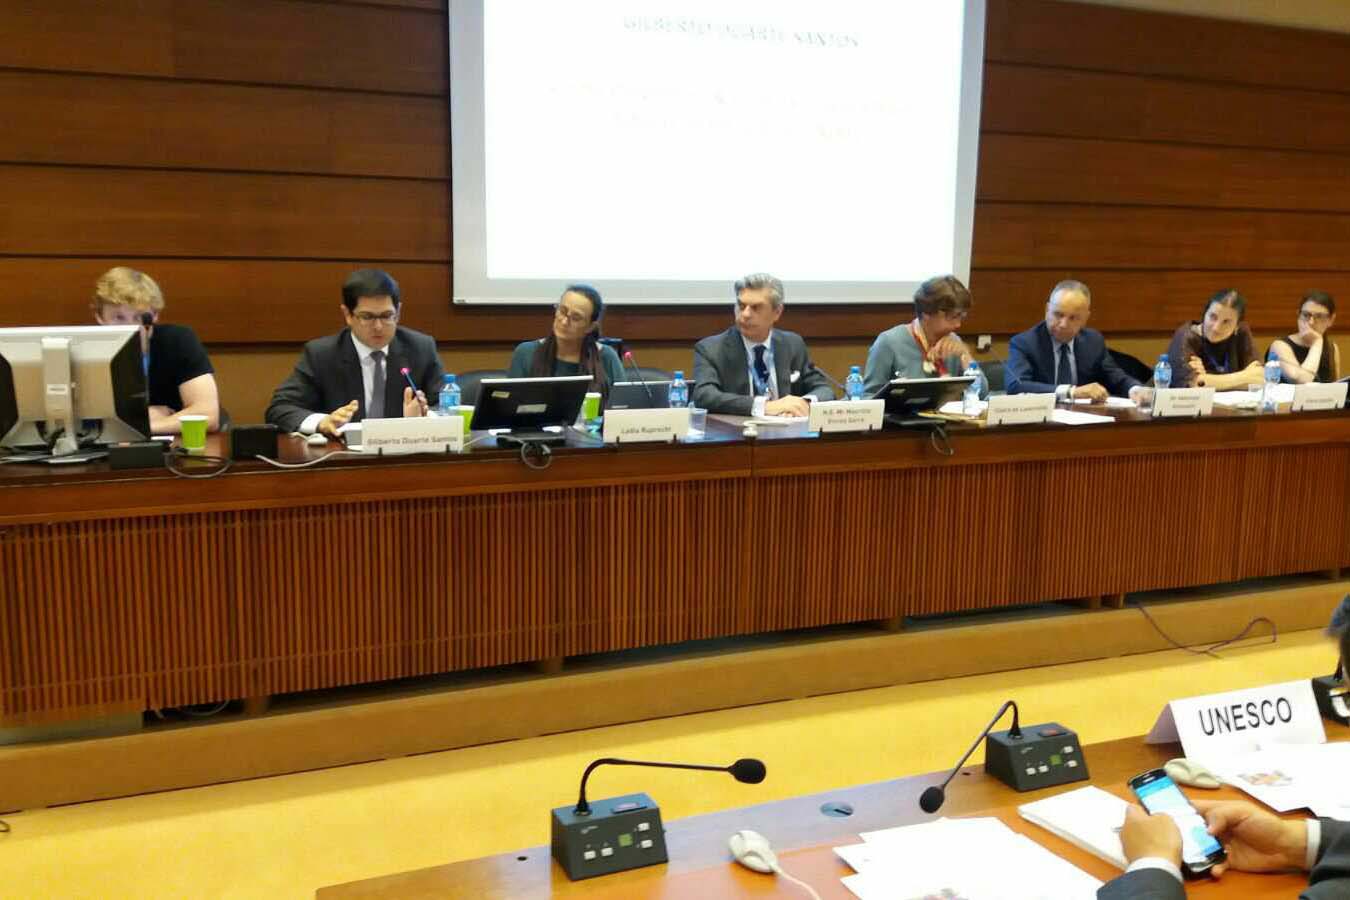 Les organes des Nations Unies débattent sur l'éducation aux droits de l'homme à Genève